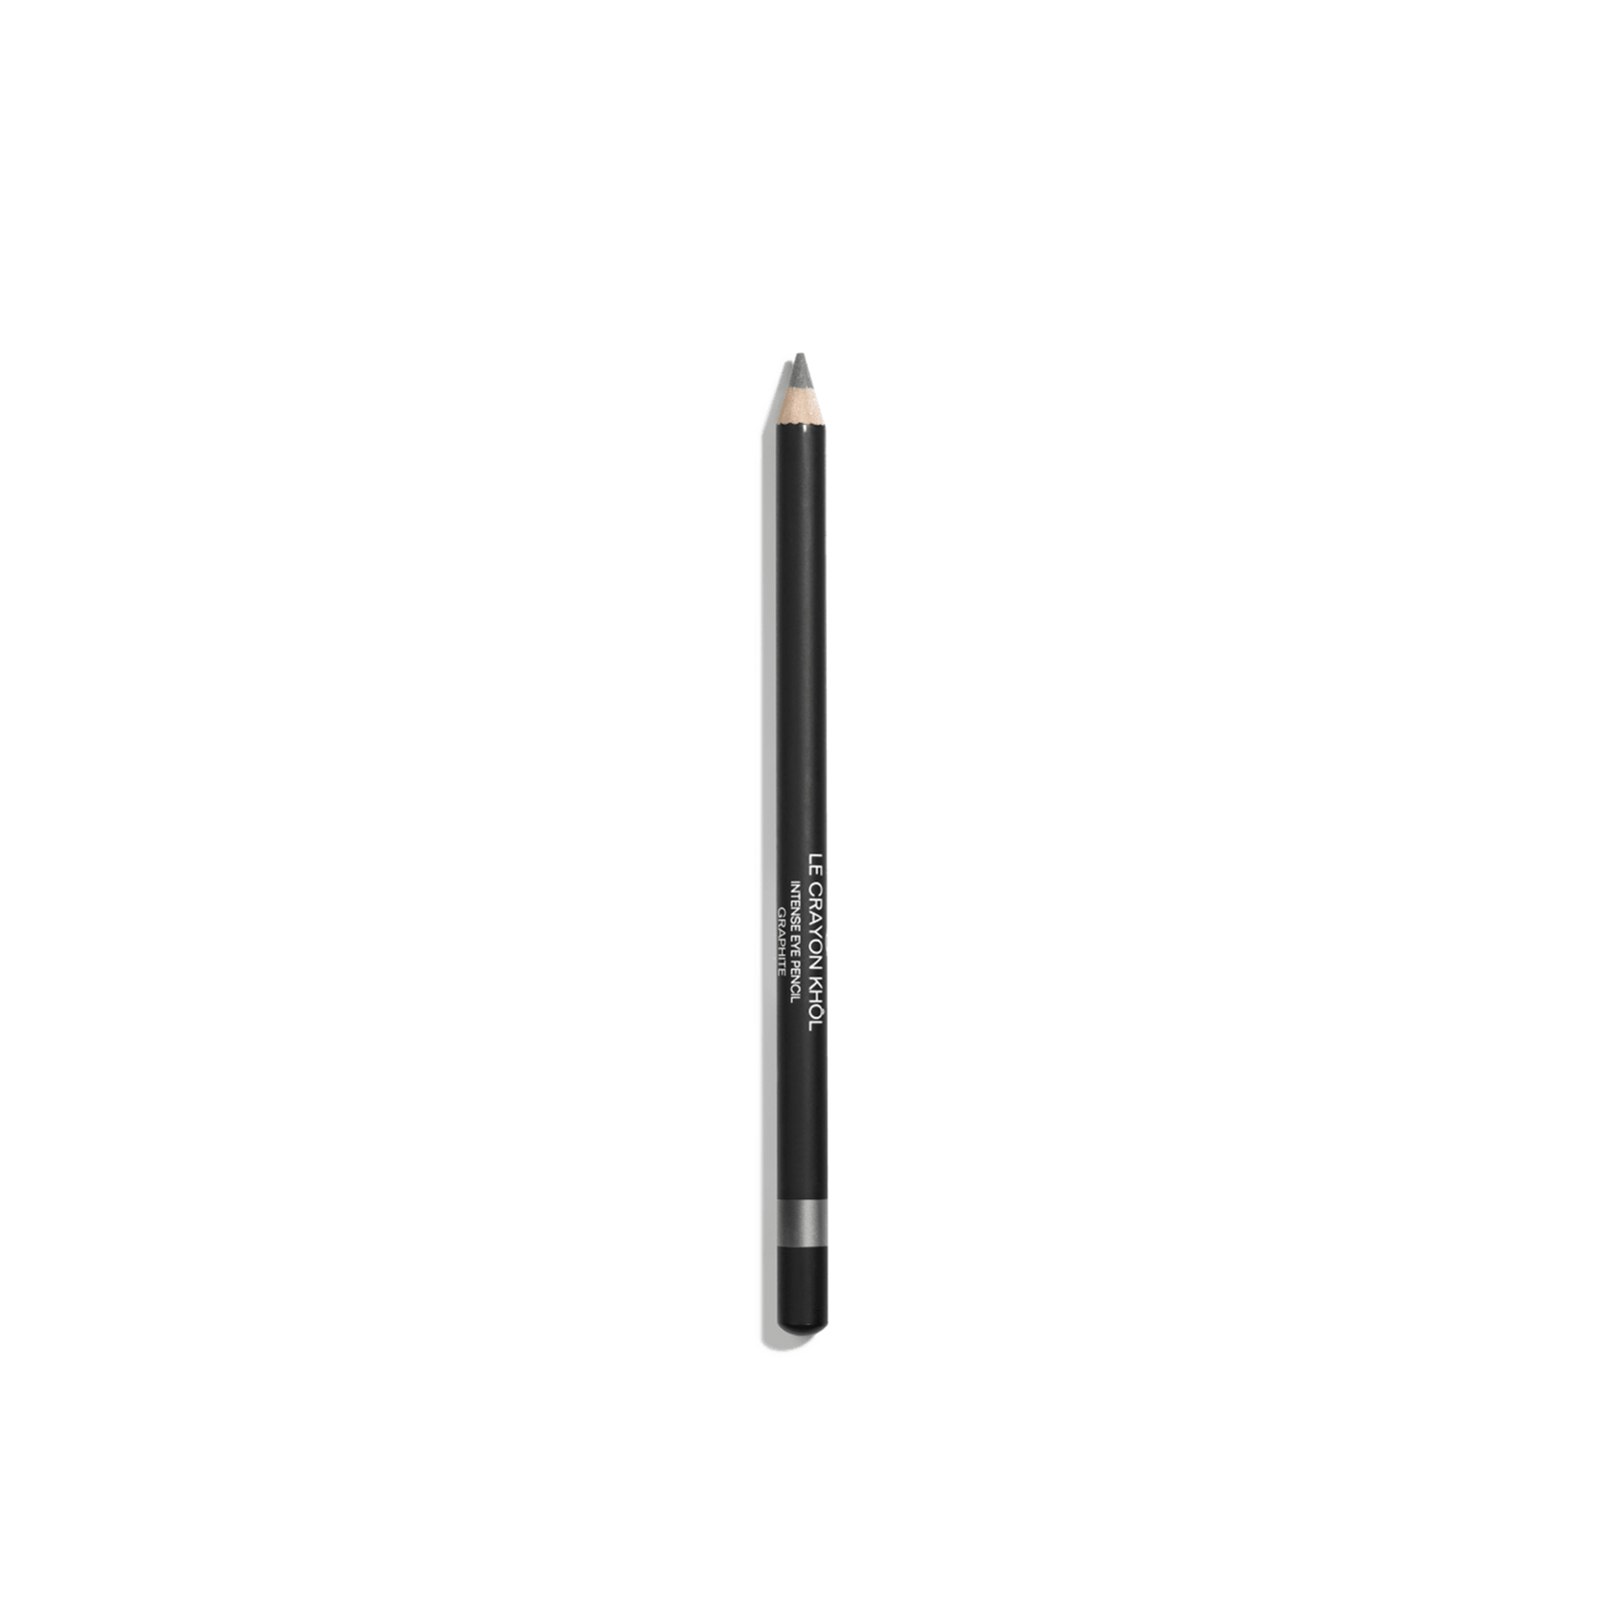 CHANEL Le Crayon Khôl Intense Eye Pencil 64 Graphite 1.4g